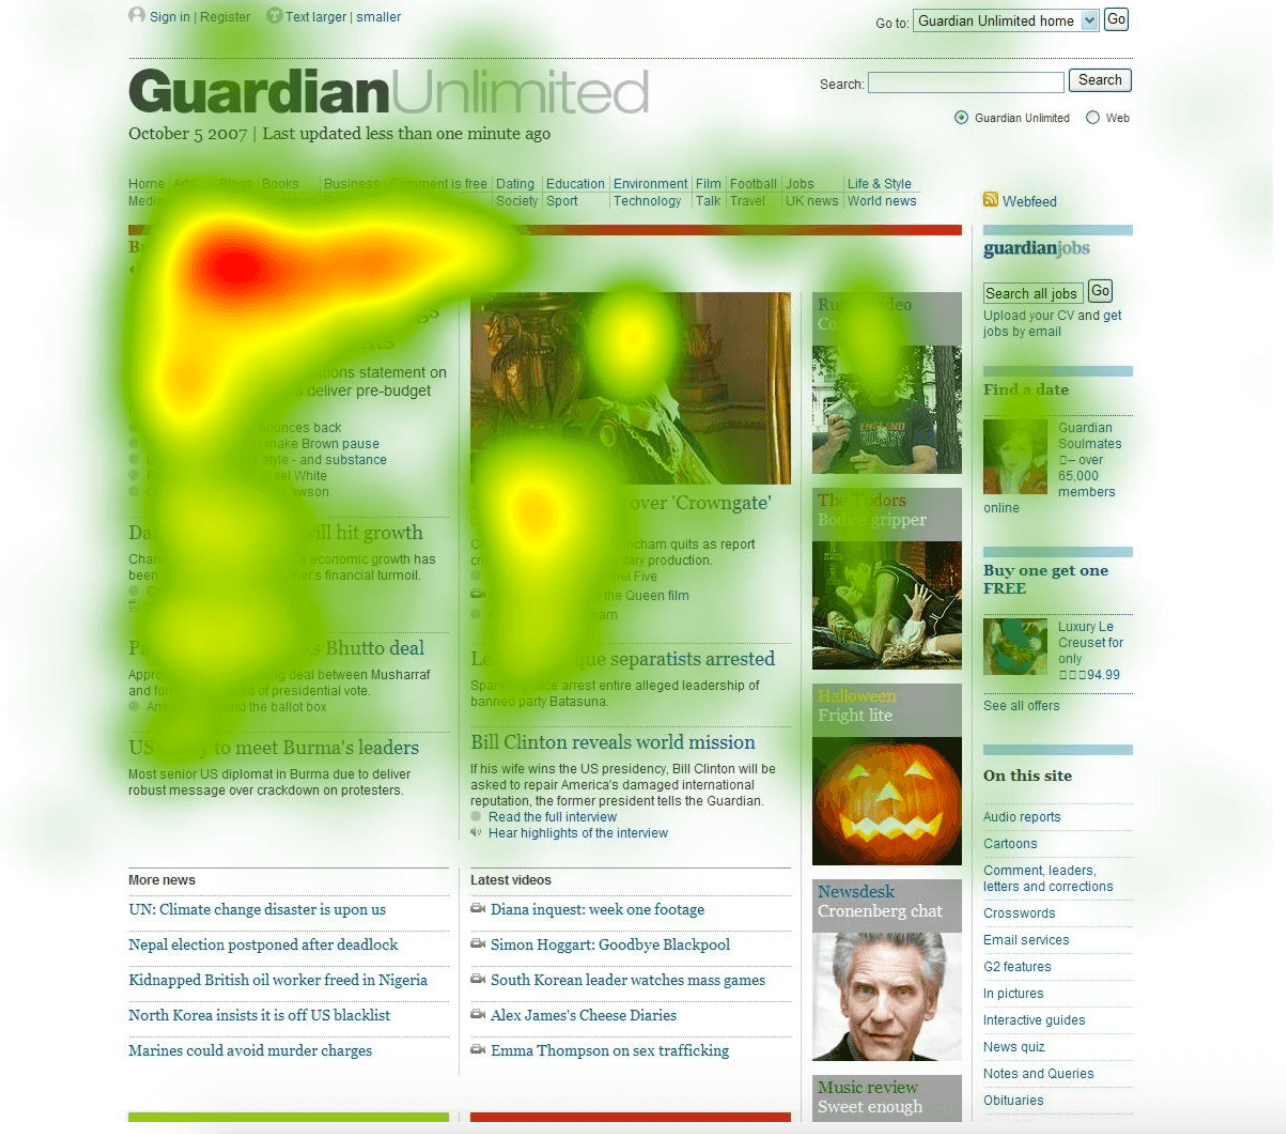 기사 시작 부분에서 대부분의 활동을 보여주는 Guardian의 히트맵 스크린샷